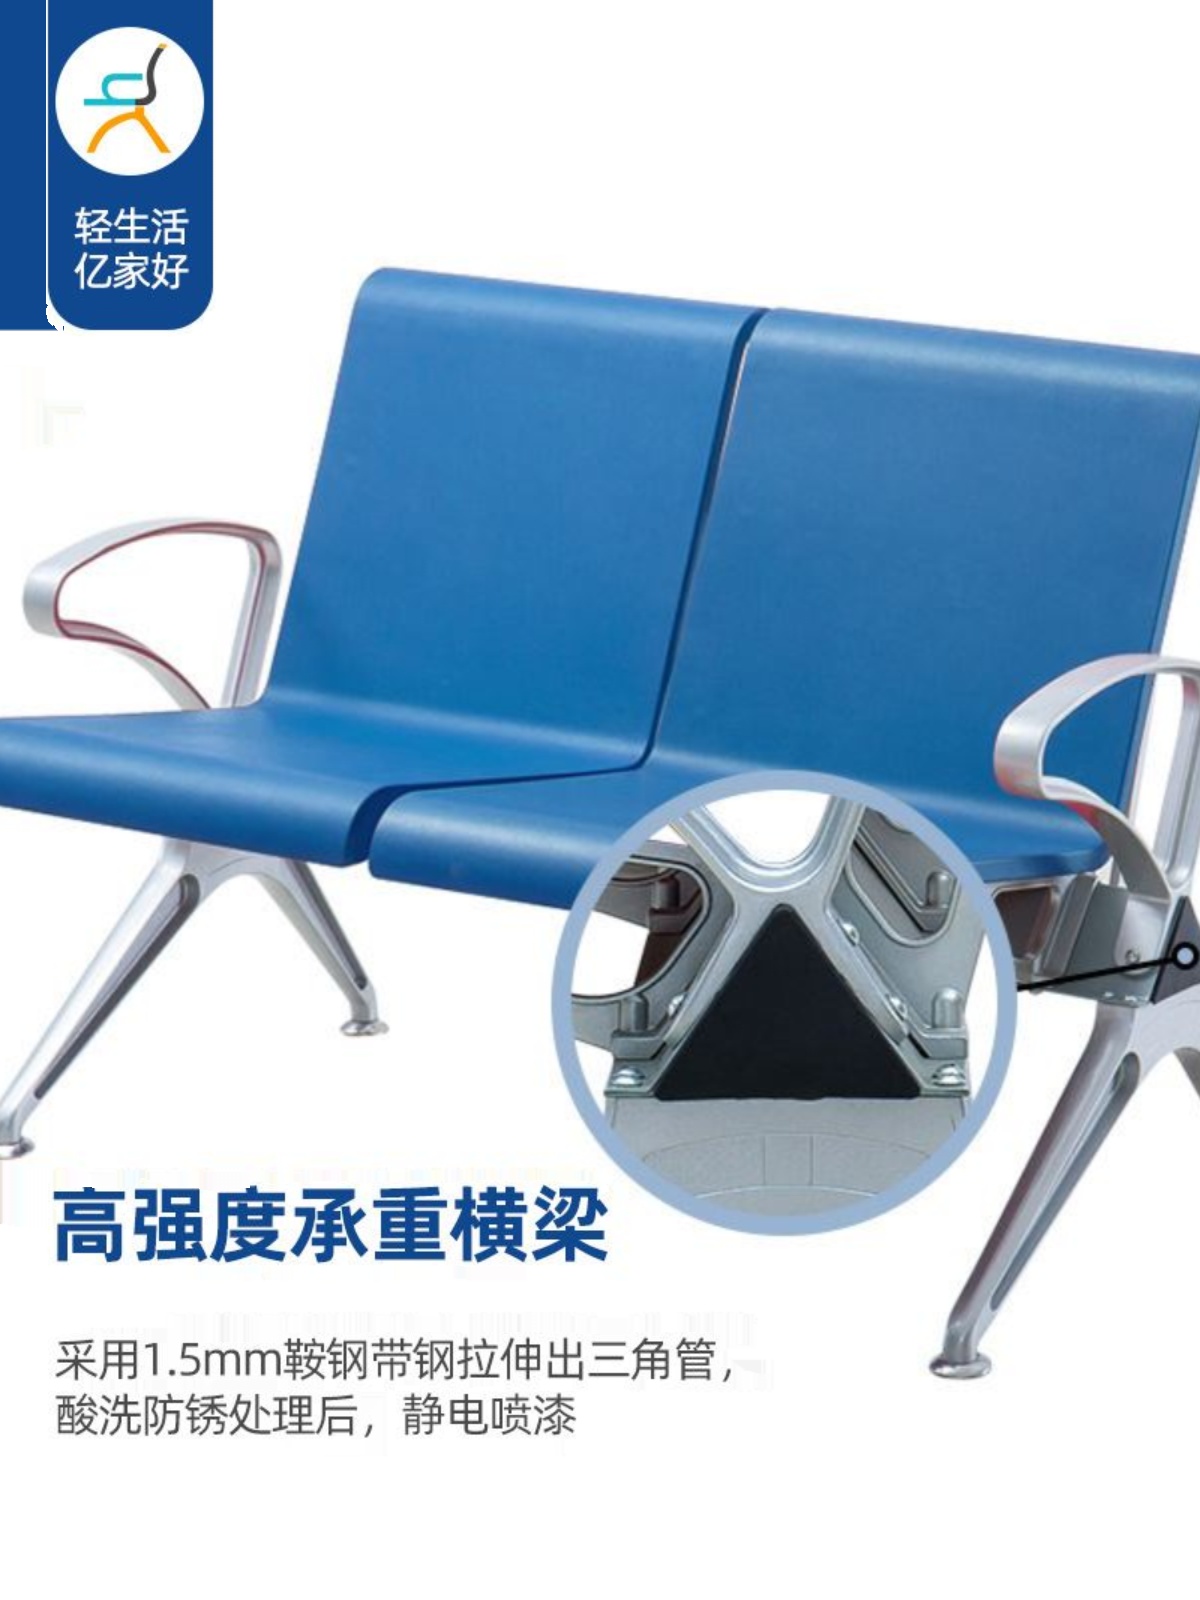 定作铝合金扶手PU等候椅金属骨架排椅学校机场餐厅公共等候椅